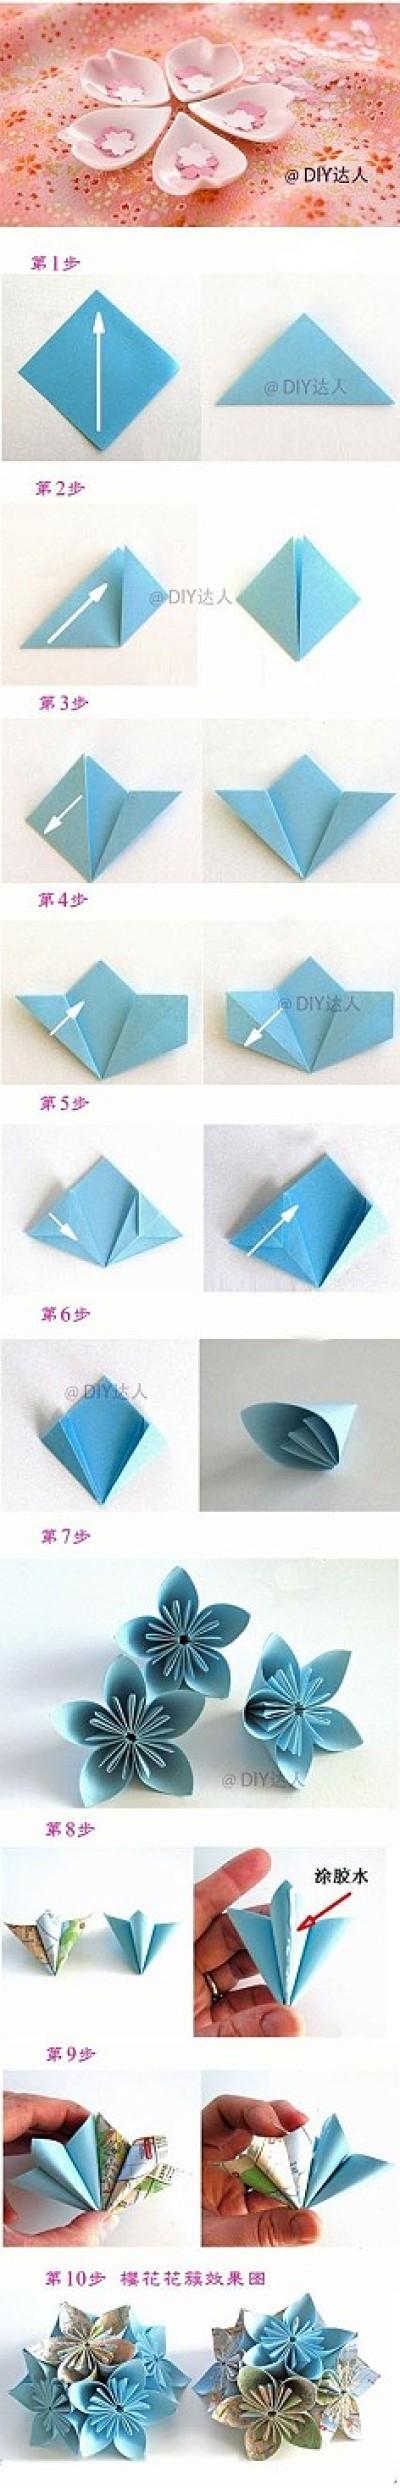 叠折纸太漂亮的樱花教程教程